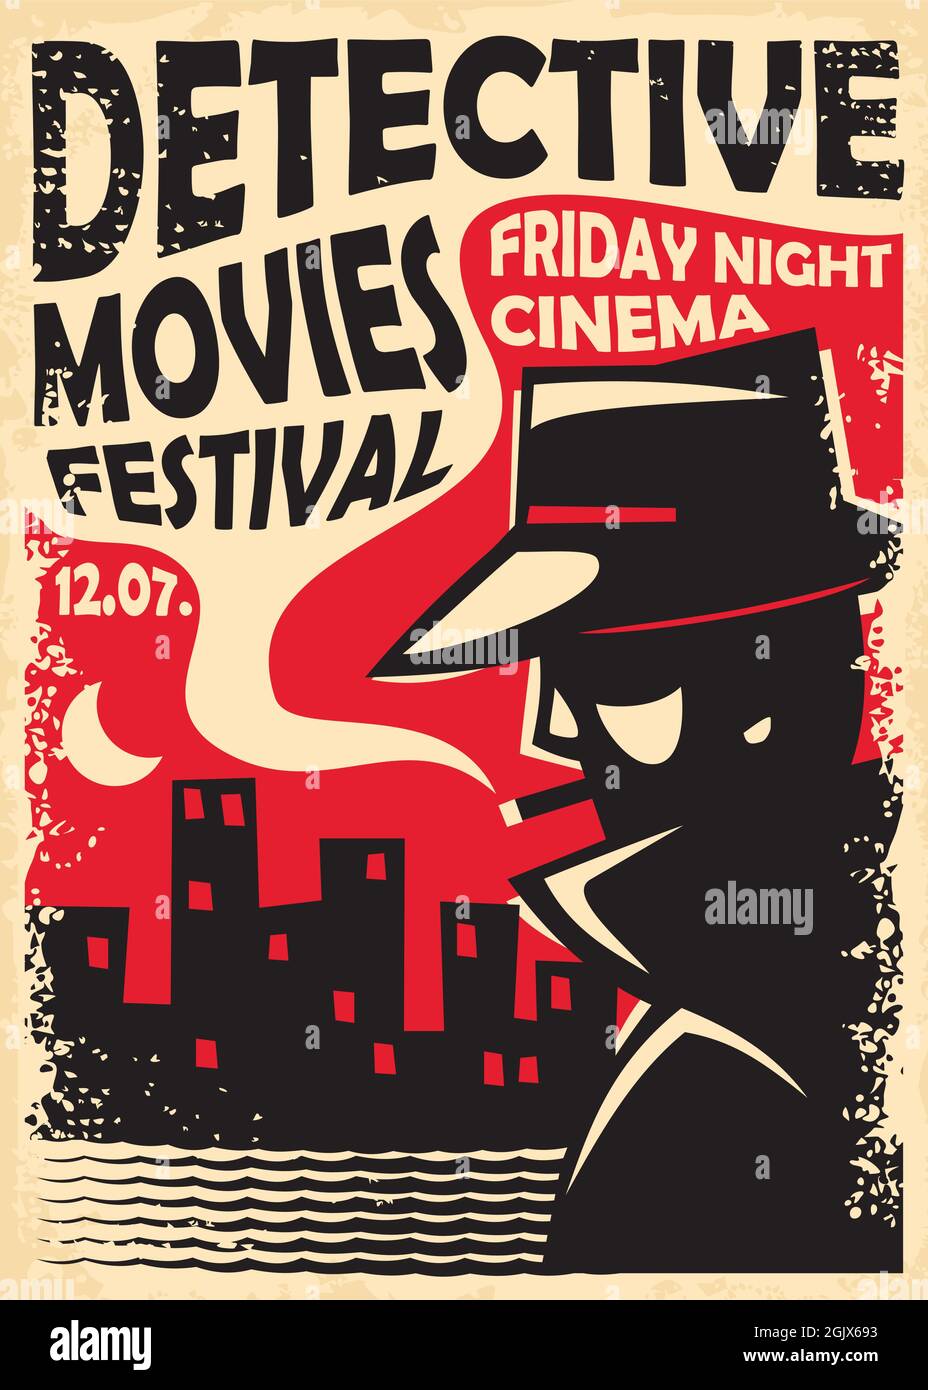 Detective Movies Filmfestival Retro-Poster-Vorlage mit Geheimagenten Silhouette und Skyline der Stadt. Vintage-Schild für Kinoveranstaltung. Spion, Verbrechen, Geheimnis Stock Vektor